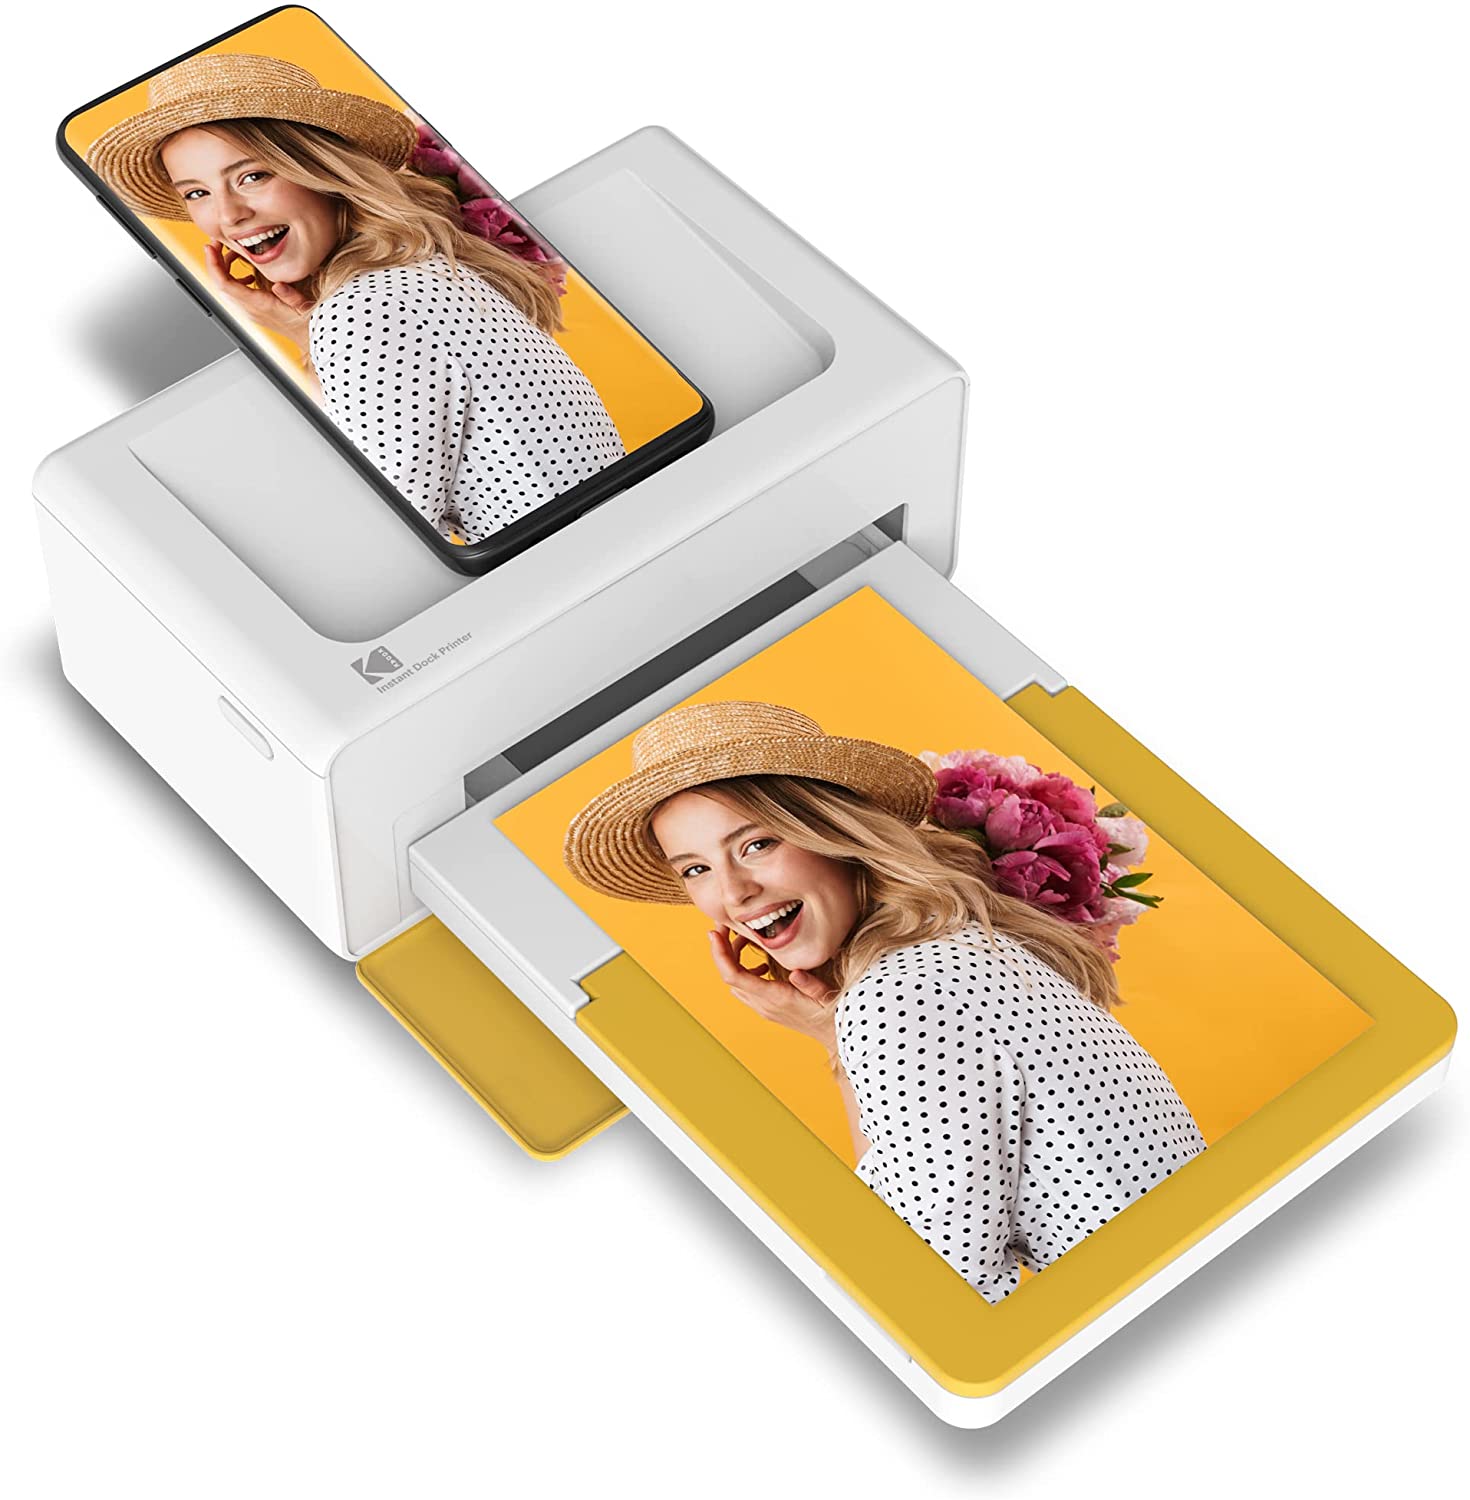 Kodak Dock Plus 4x6 Portable Instant Photo Printer